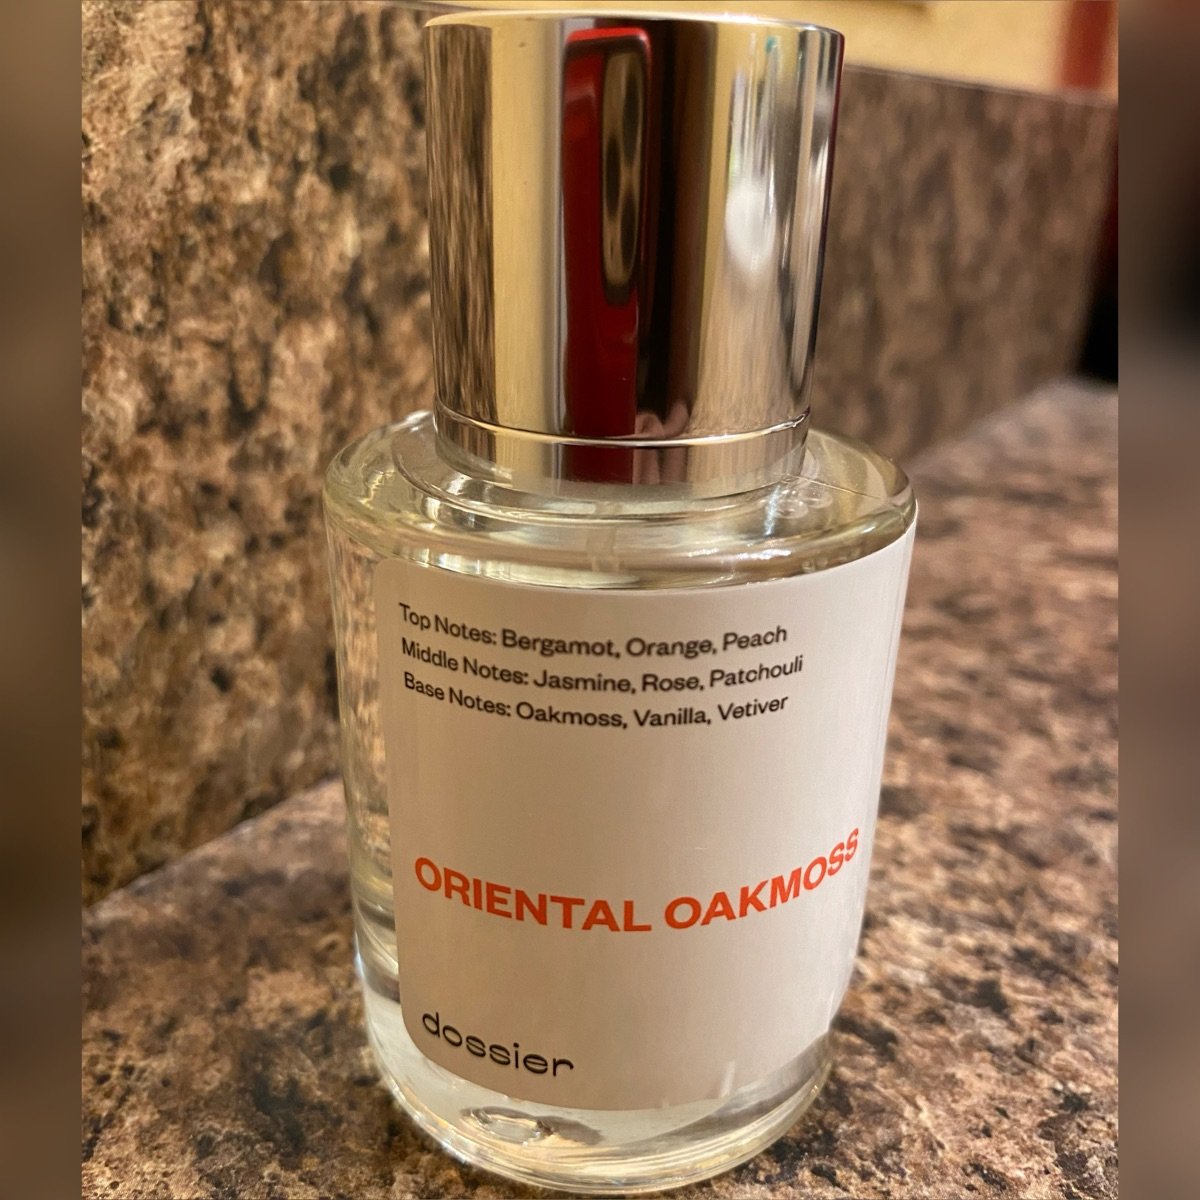 ORIENTAL OAKMOSS By DOSSIER / 25,000 - Beaclassy fragrance